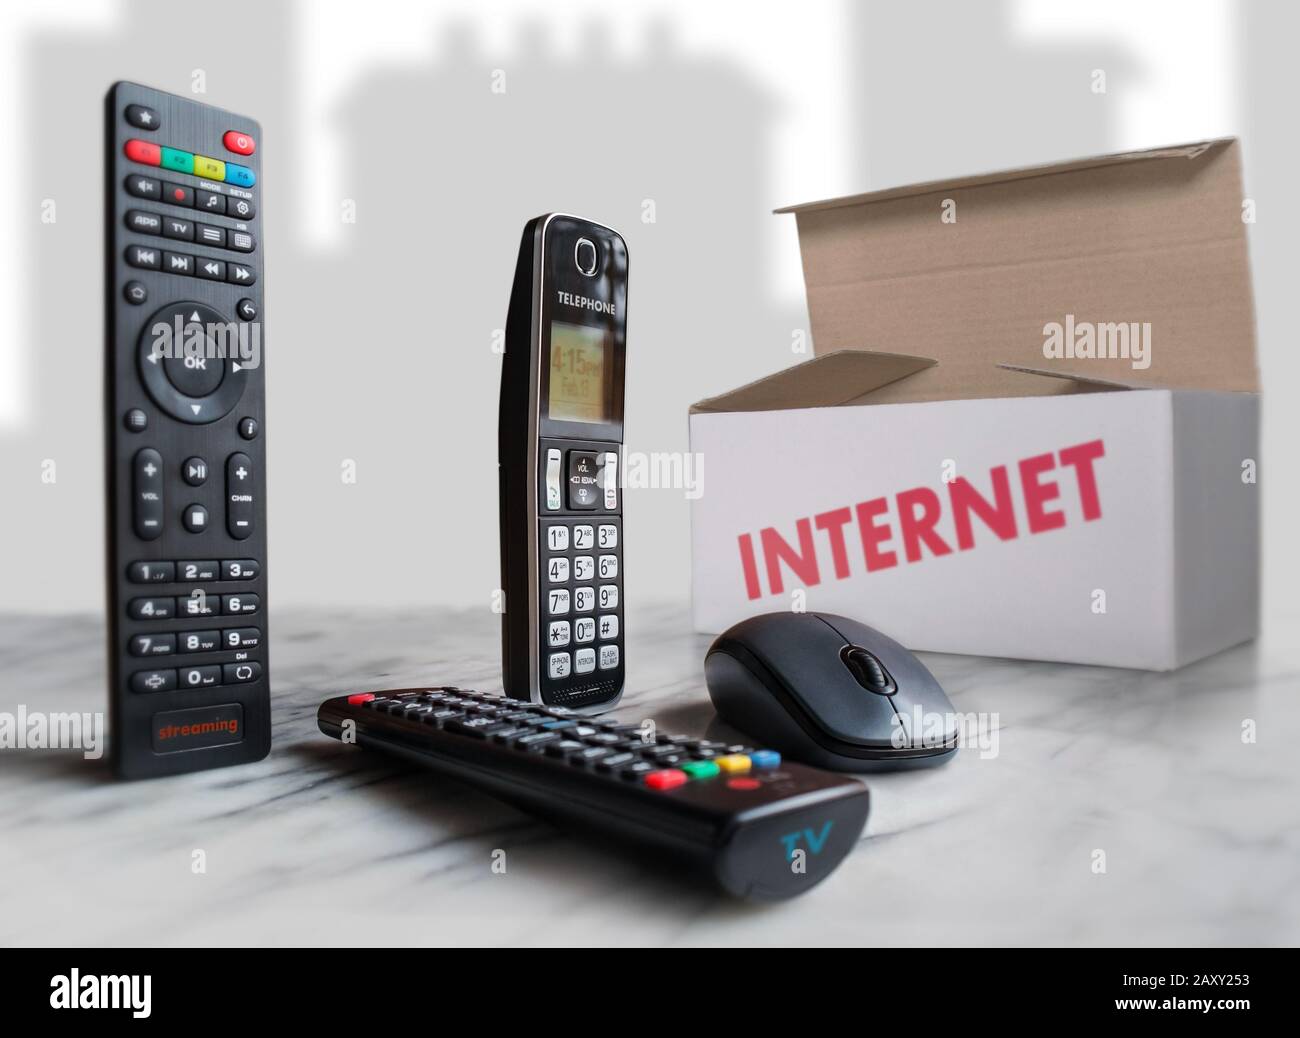 Su una superficie chiara vediamo un telecomando per lo streaming, un altro per TV, un mouse per computer e una scatola che rappresenta il pacchetto di servizi. Foto Stock